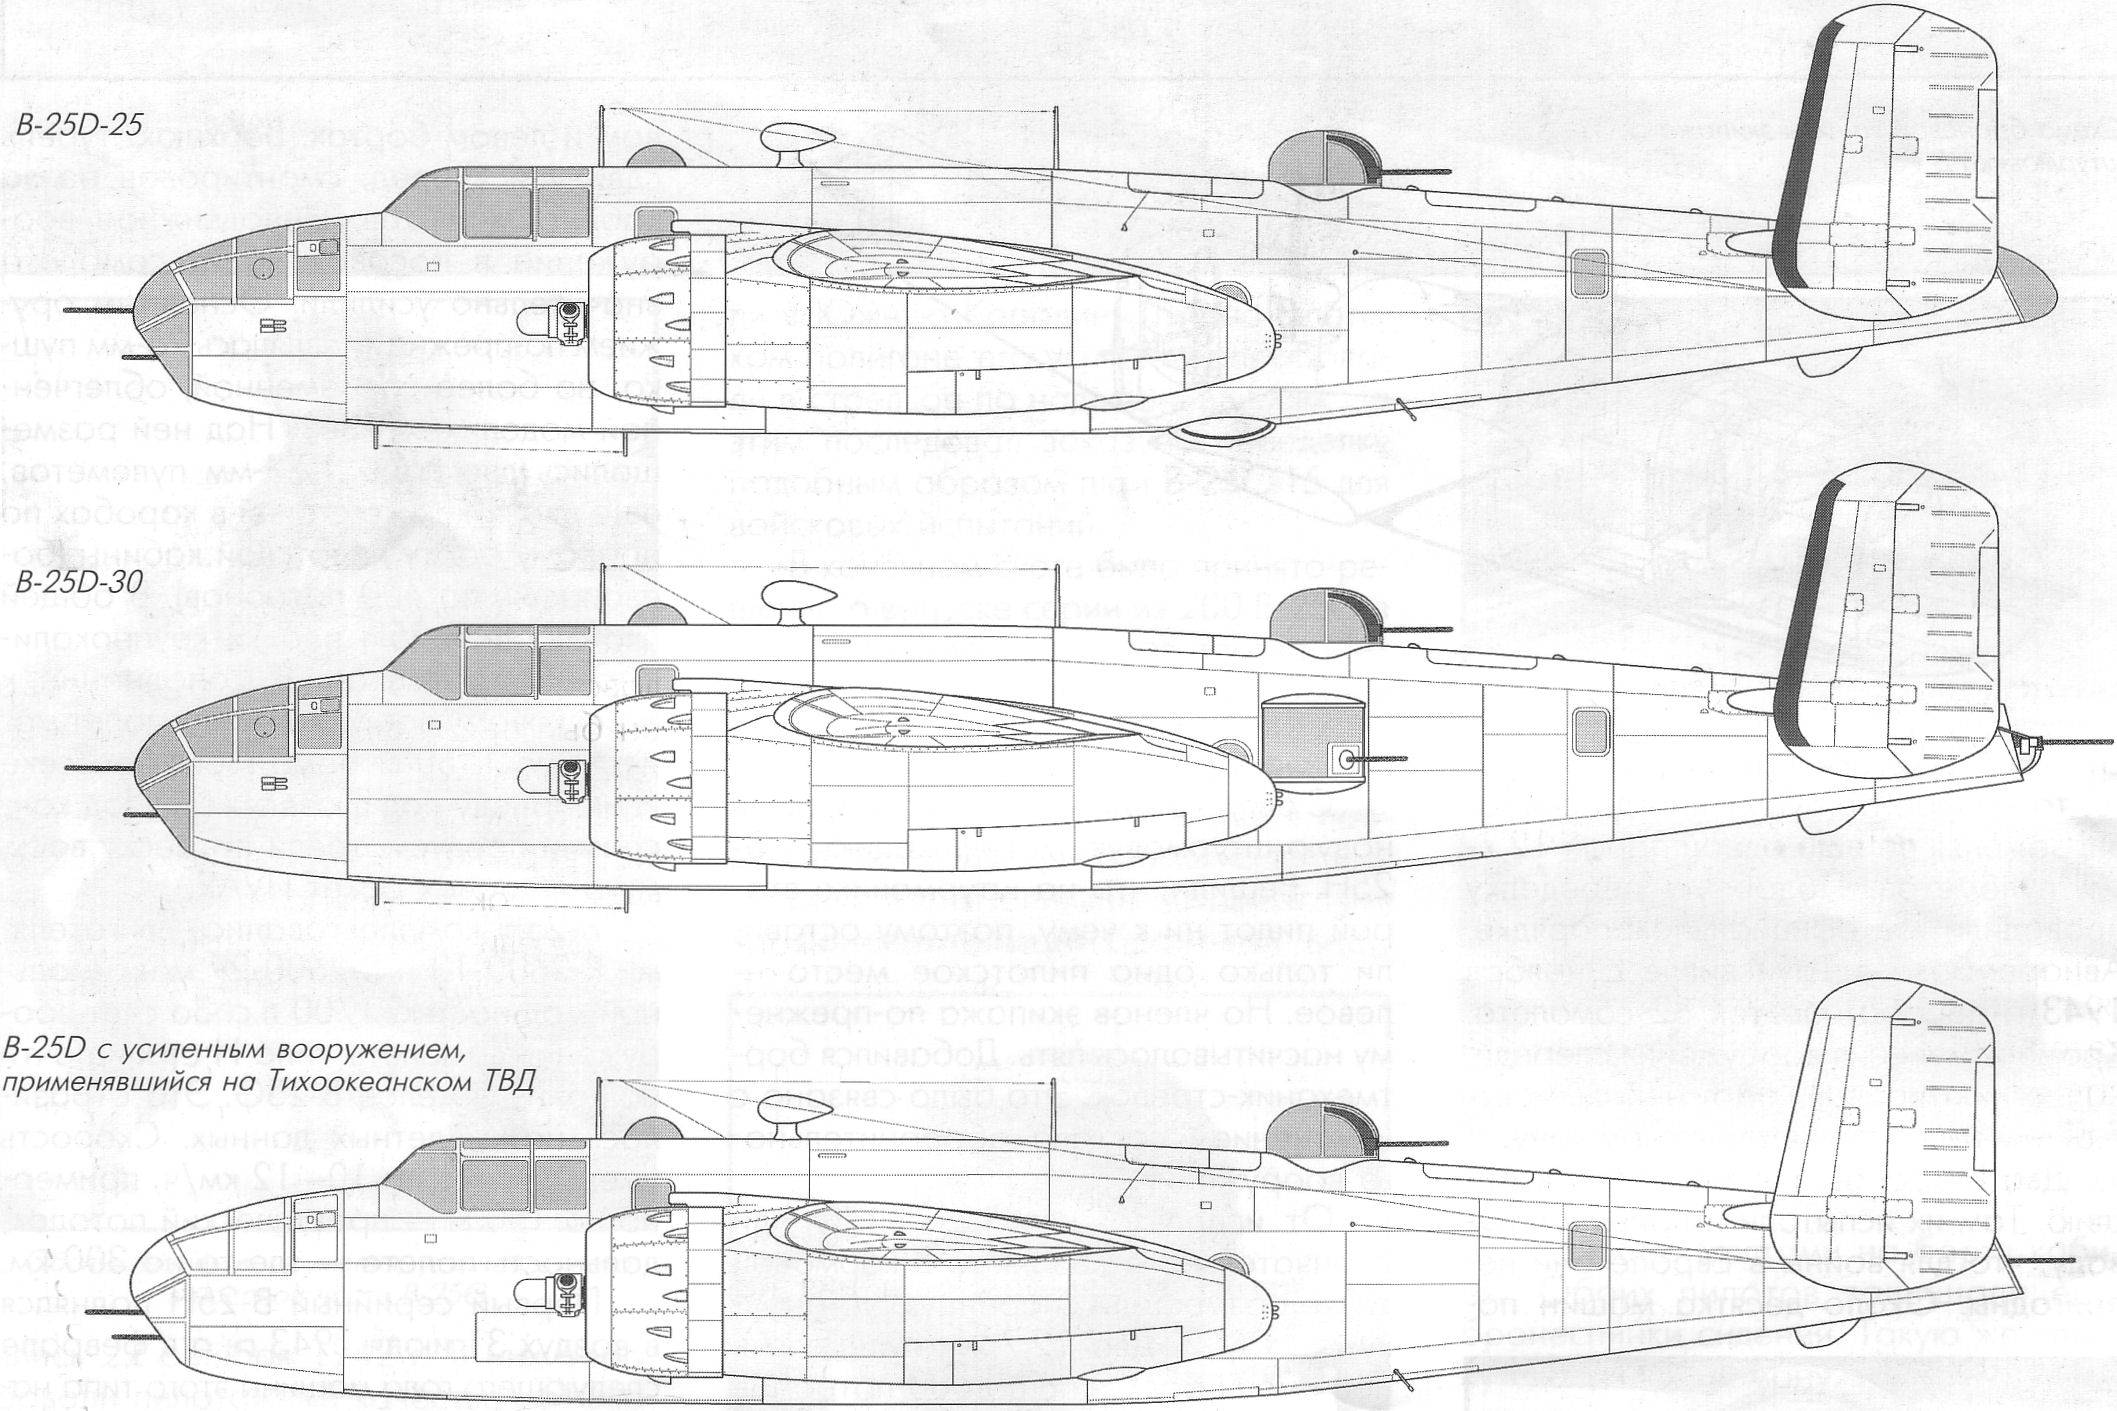 North american b-25 mitchell: самолёт, бомбардировщик, история создания, конструкция, характеристики (ттх)